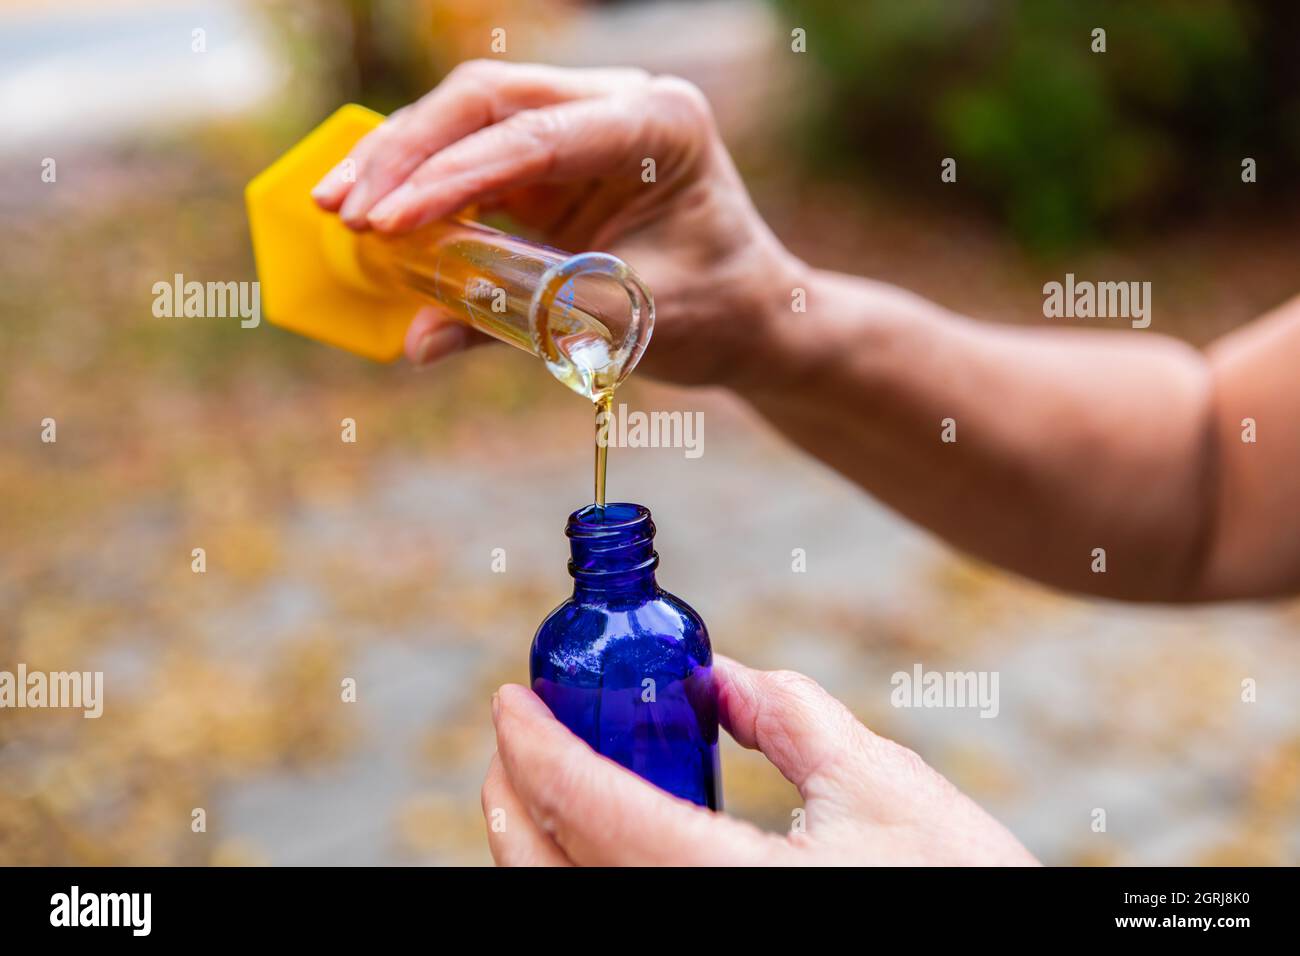 Hände einer Person , Gießen eines ätherischen Öls für die Aromatherapie, von einem transparenten Kolben zu einem blauen Fläschchen, für die Gesundheit und Entspannung verwendet. Stockfoto